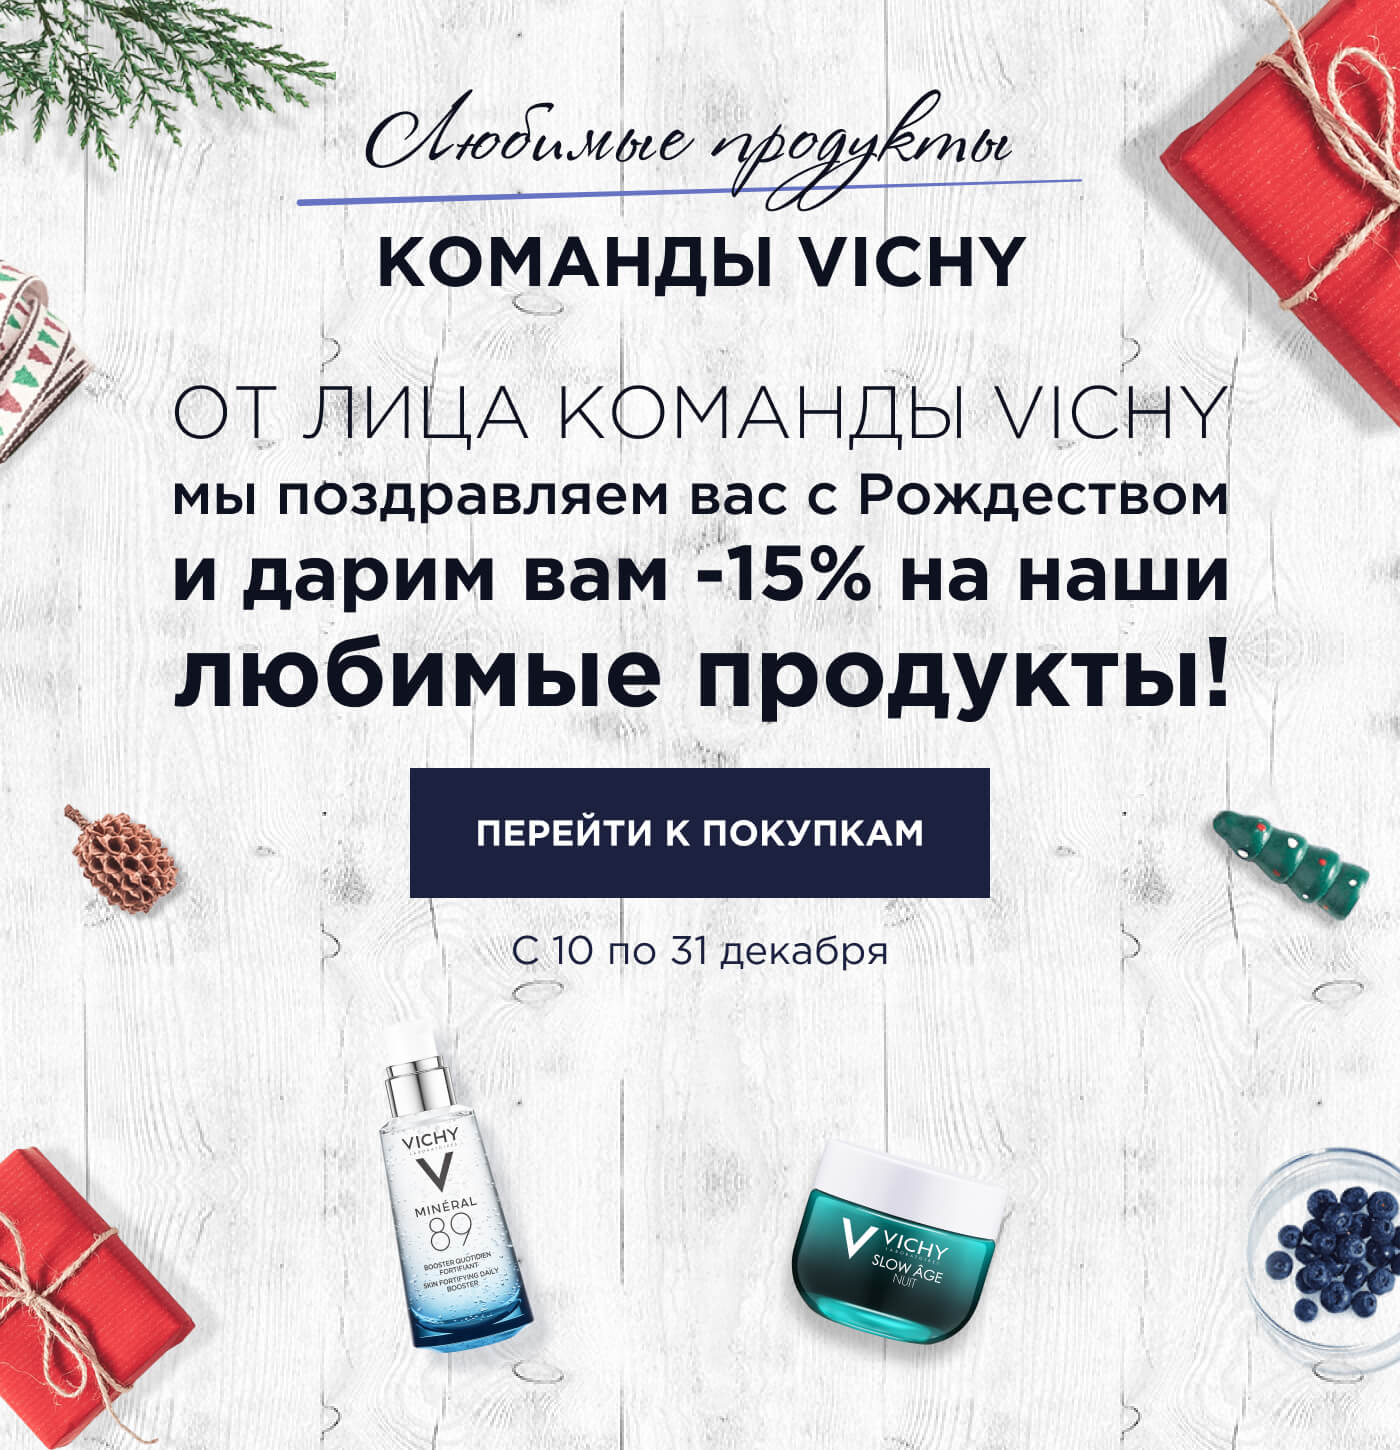 От лица команды Vichy мы поздравляем вас с Рождеством и дарим вам -15% на наши любимые продукты! | С 10 по 31 декабря | перейти К покупкам